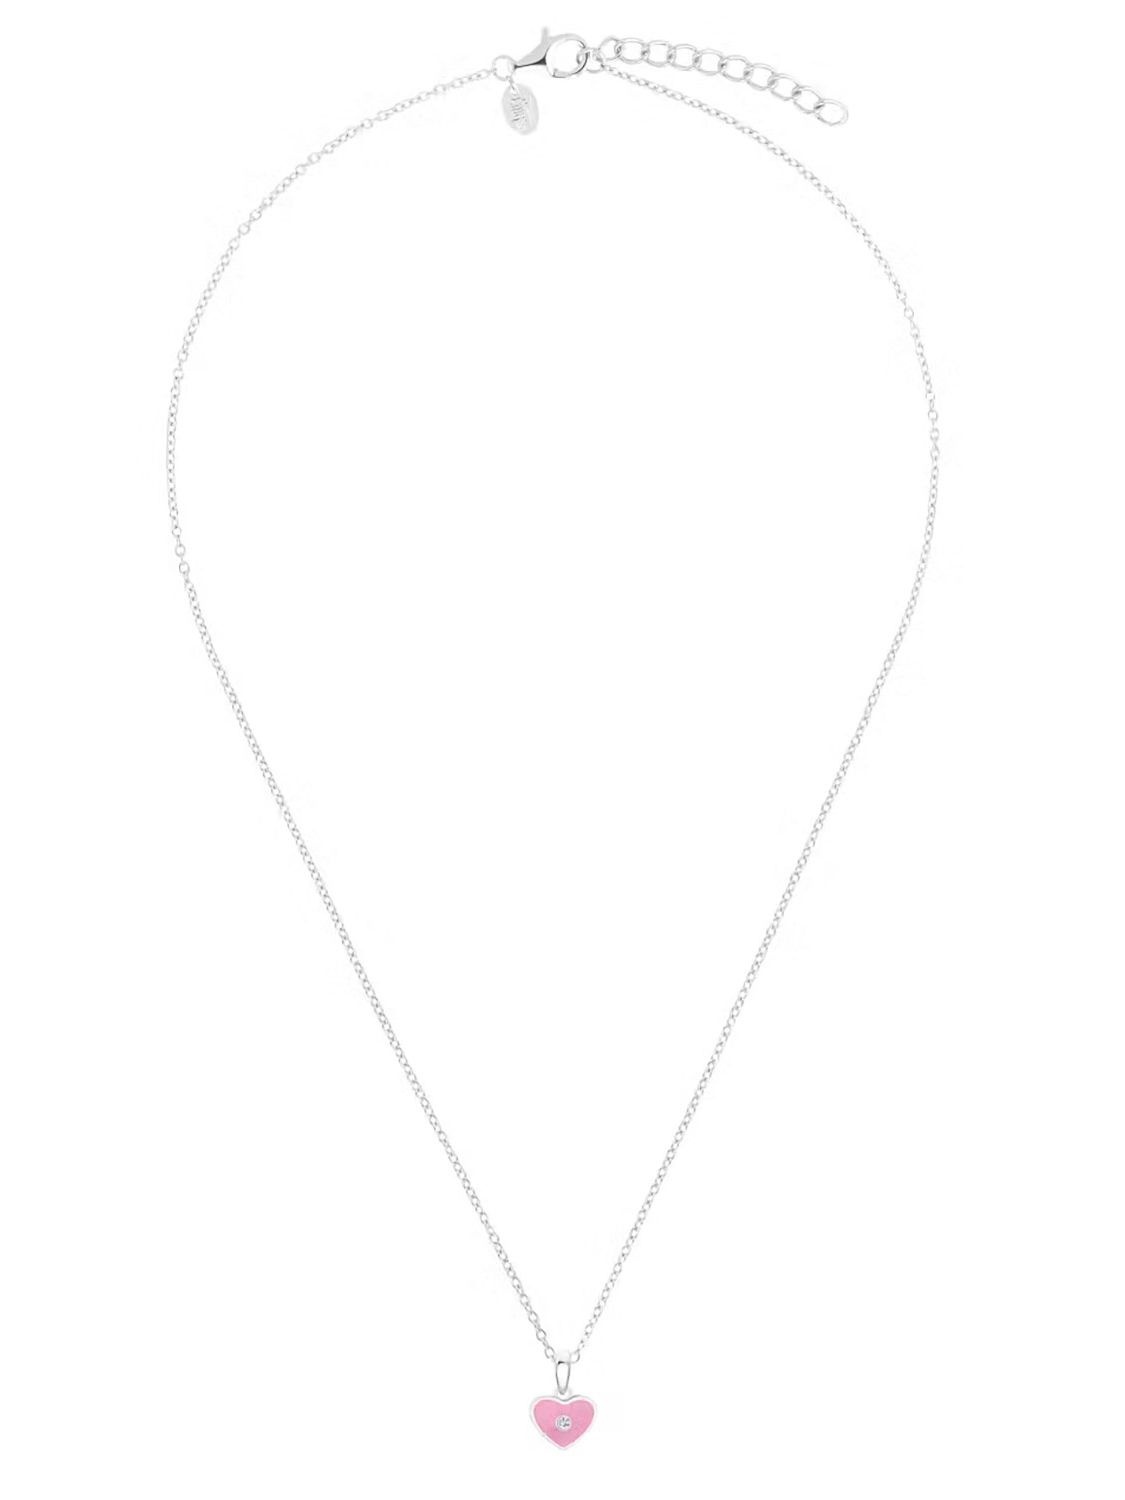 Prinzessin Lillifee Silber-Halskette für Herz-Anhänger Kinder 2035981 mit